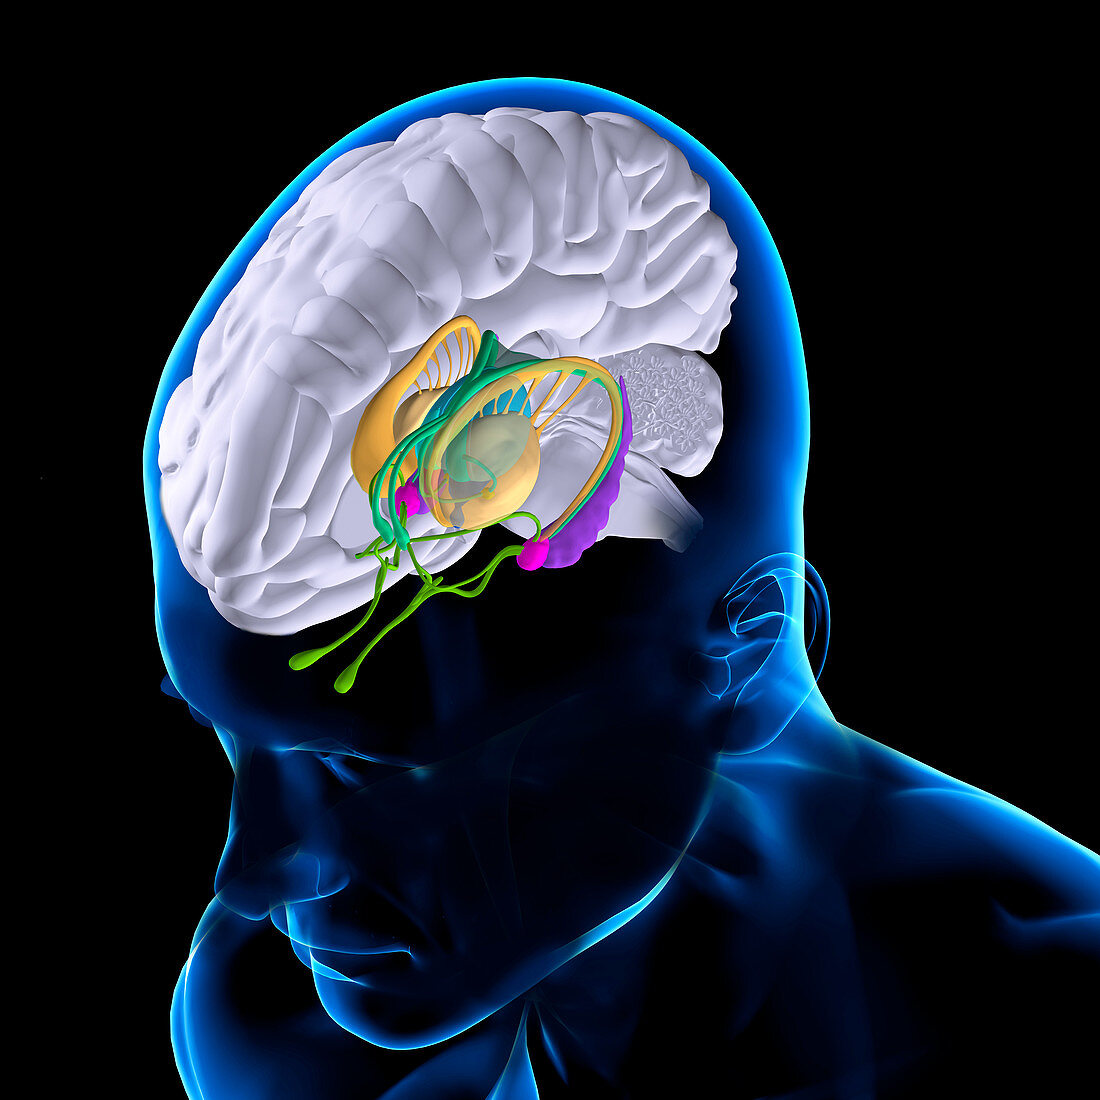 Anatomy Of The Brain